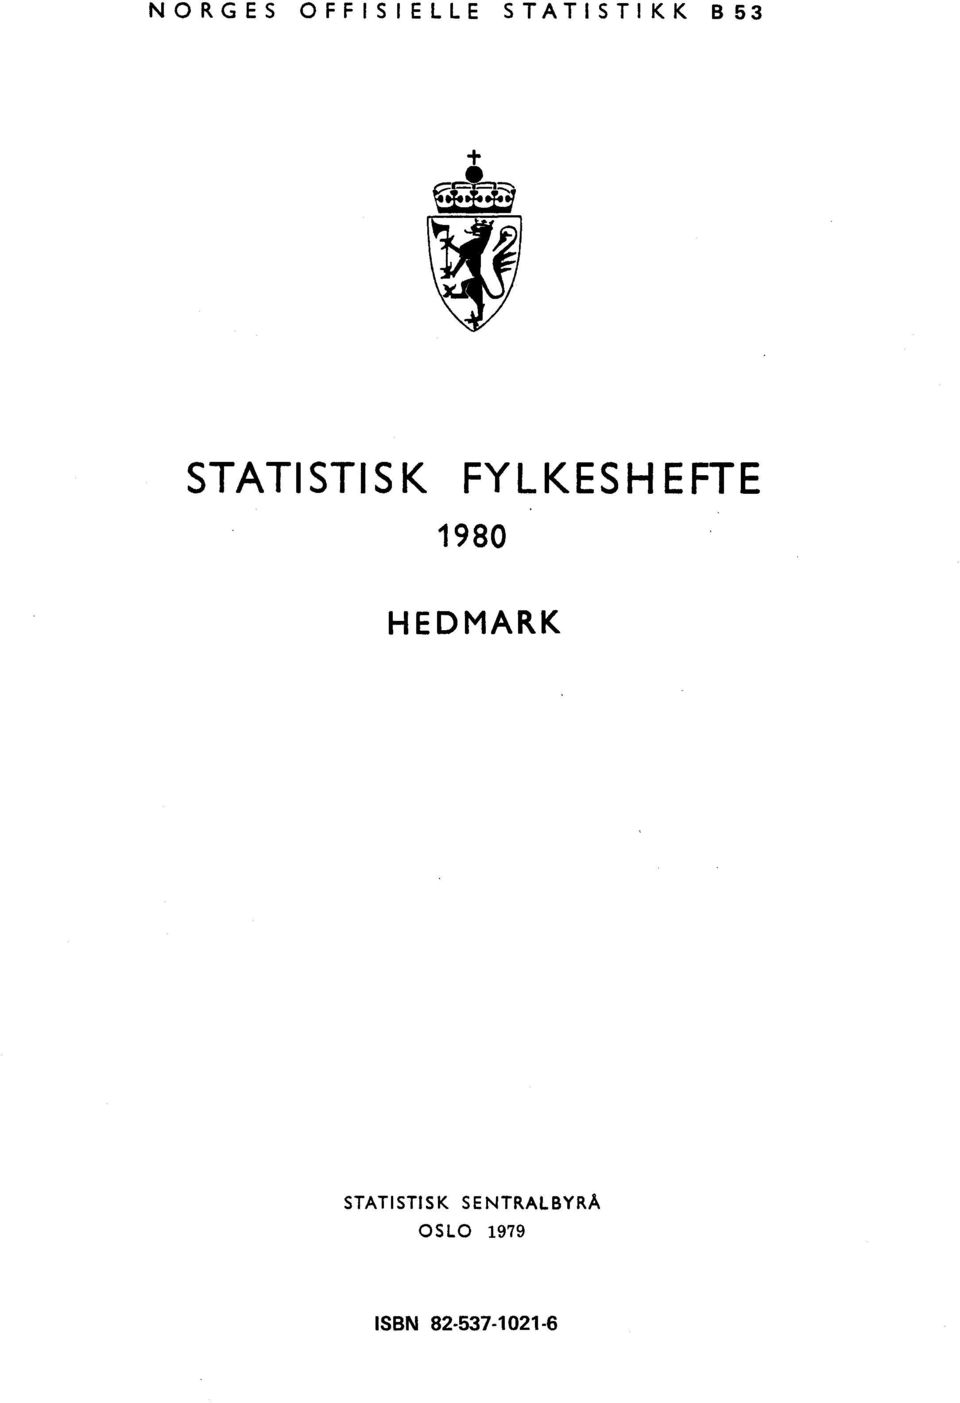 1980 HEDMARK STATISTISK